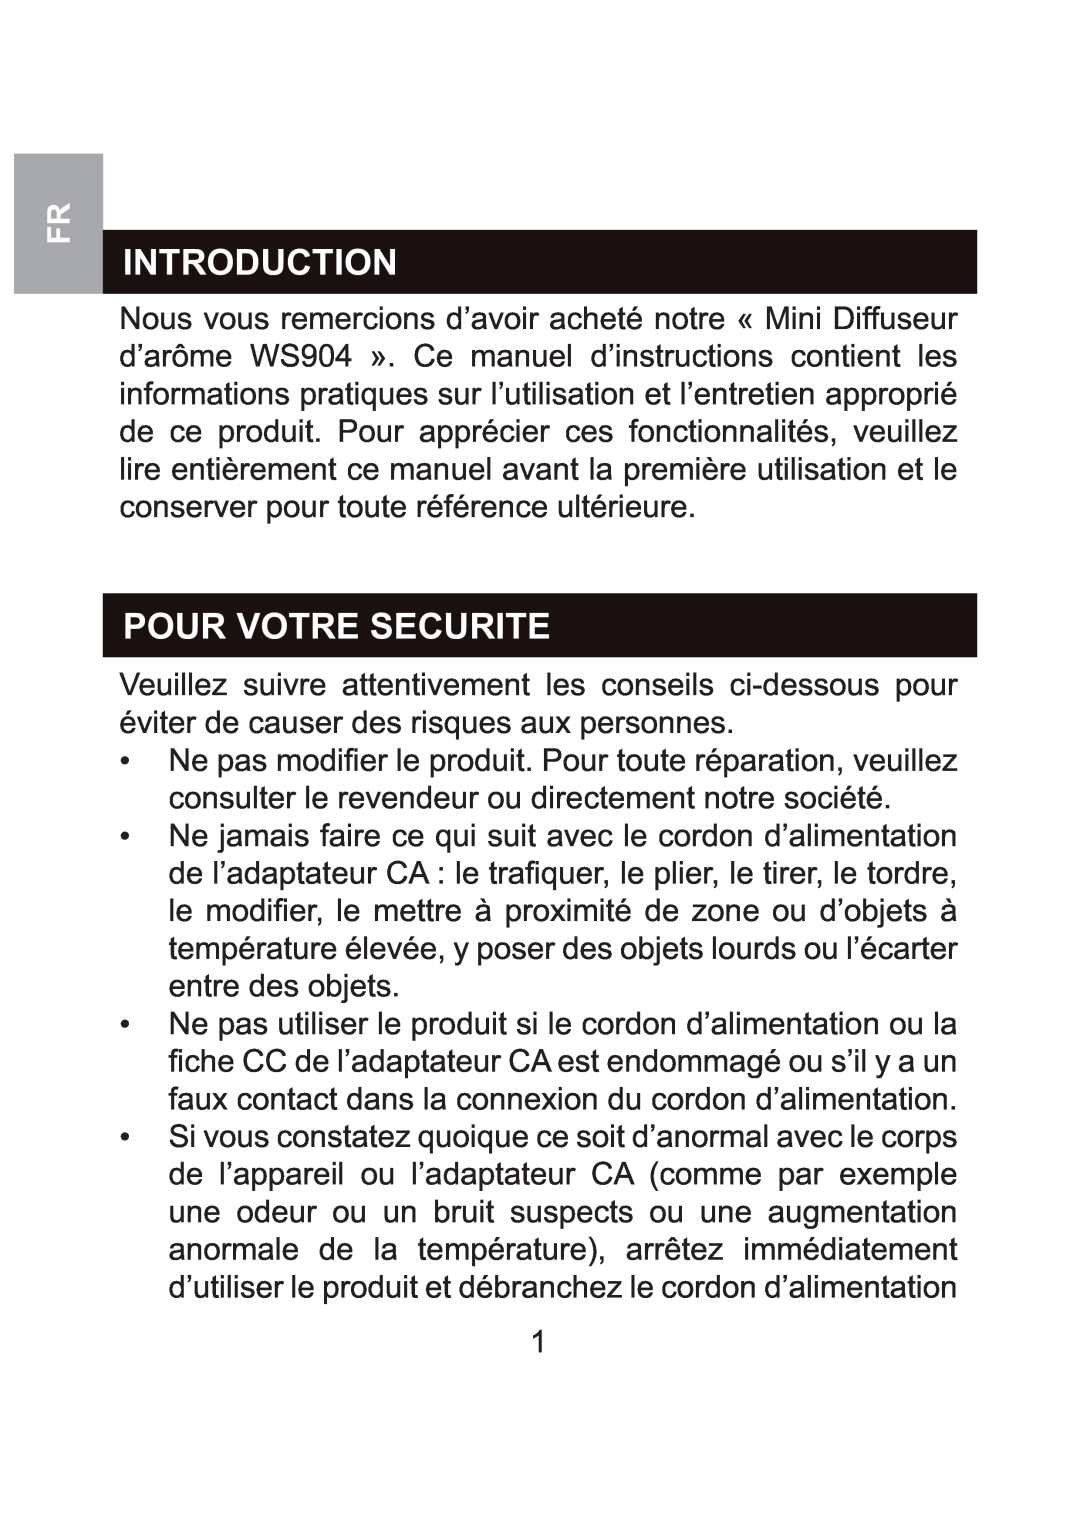 Oregon Scientific WS904 user manual Pour Votre Securite, Introduction 